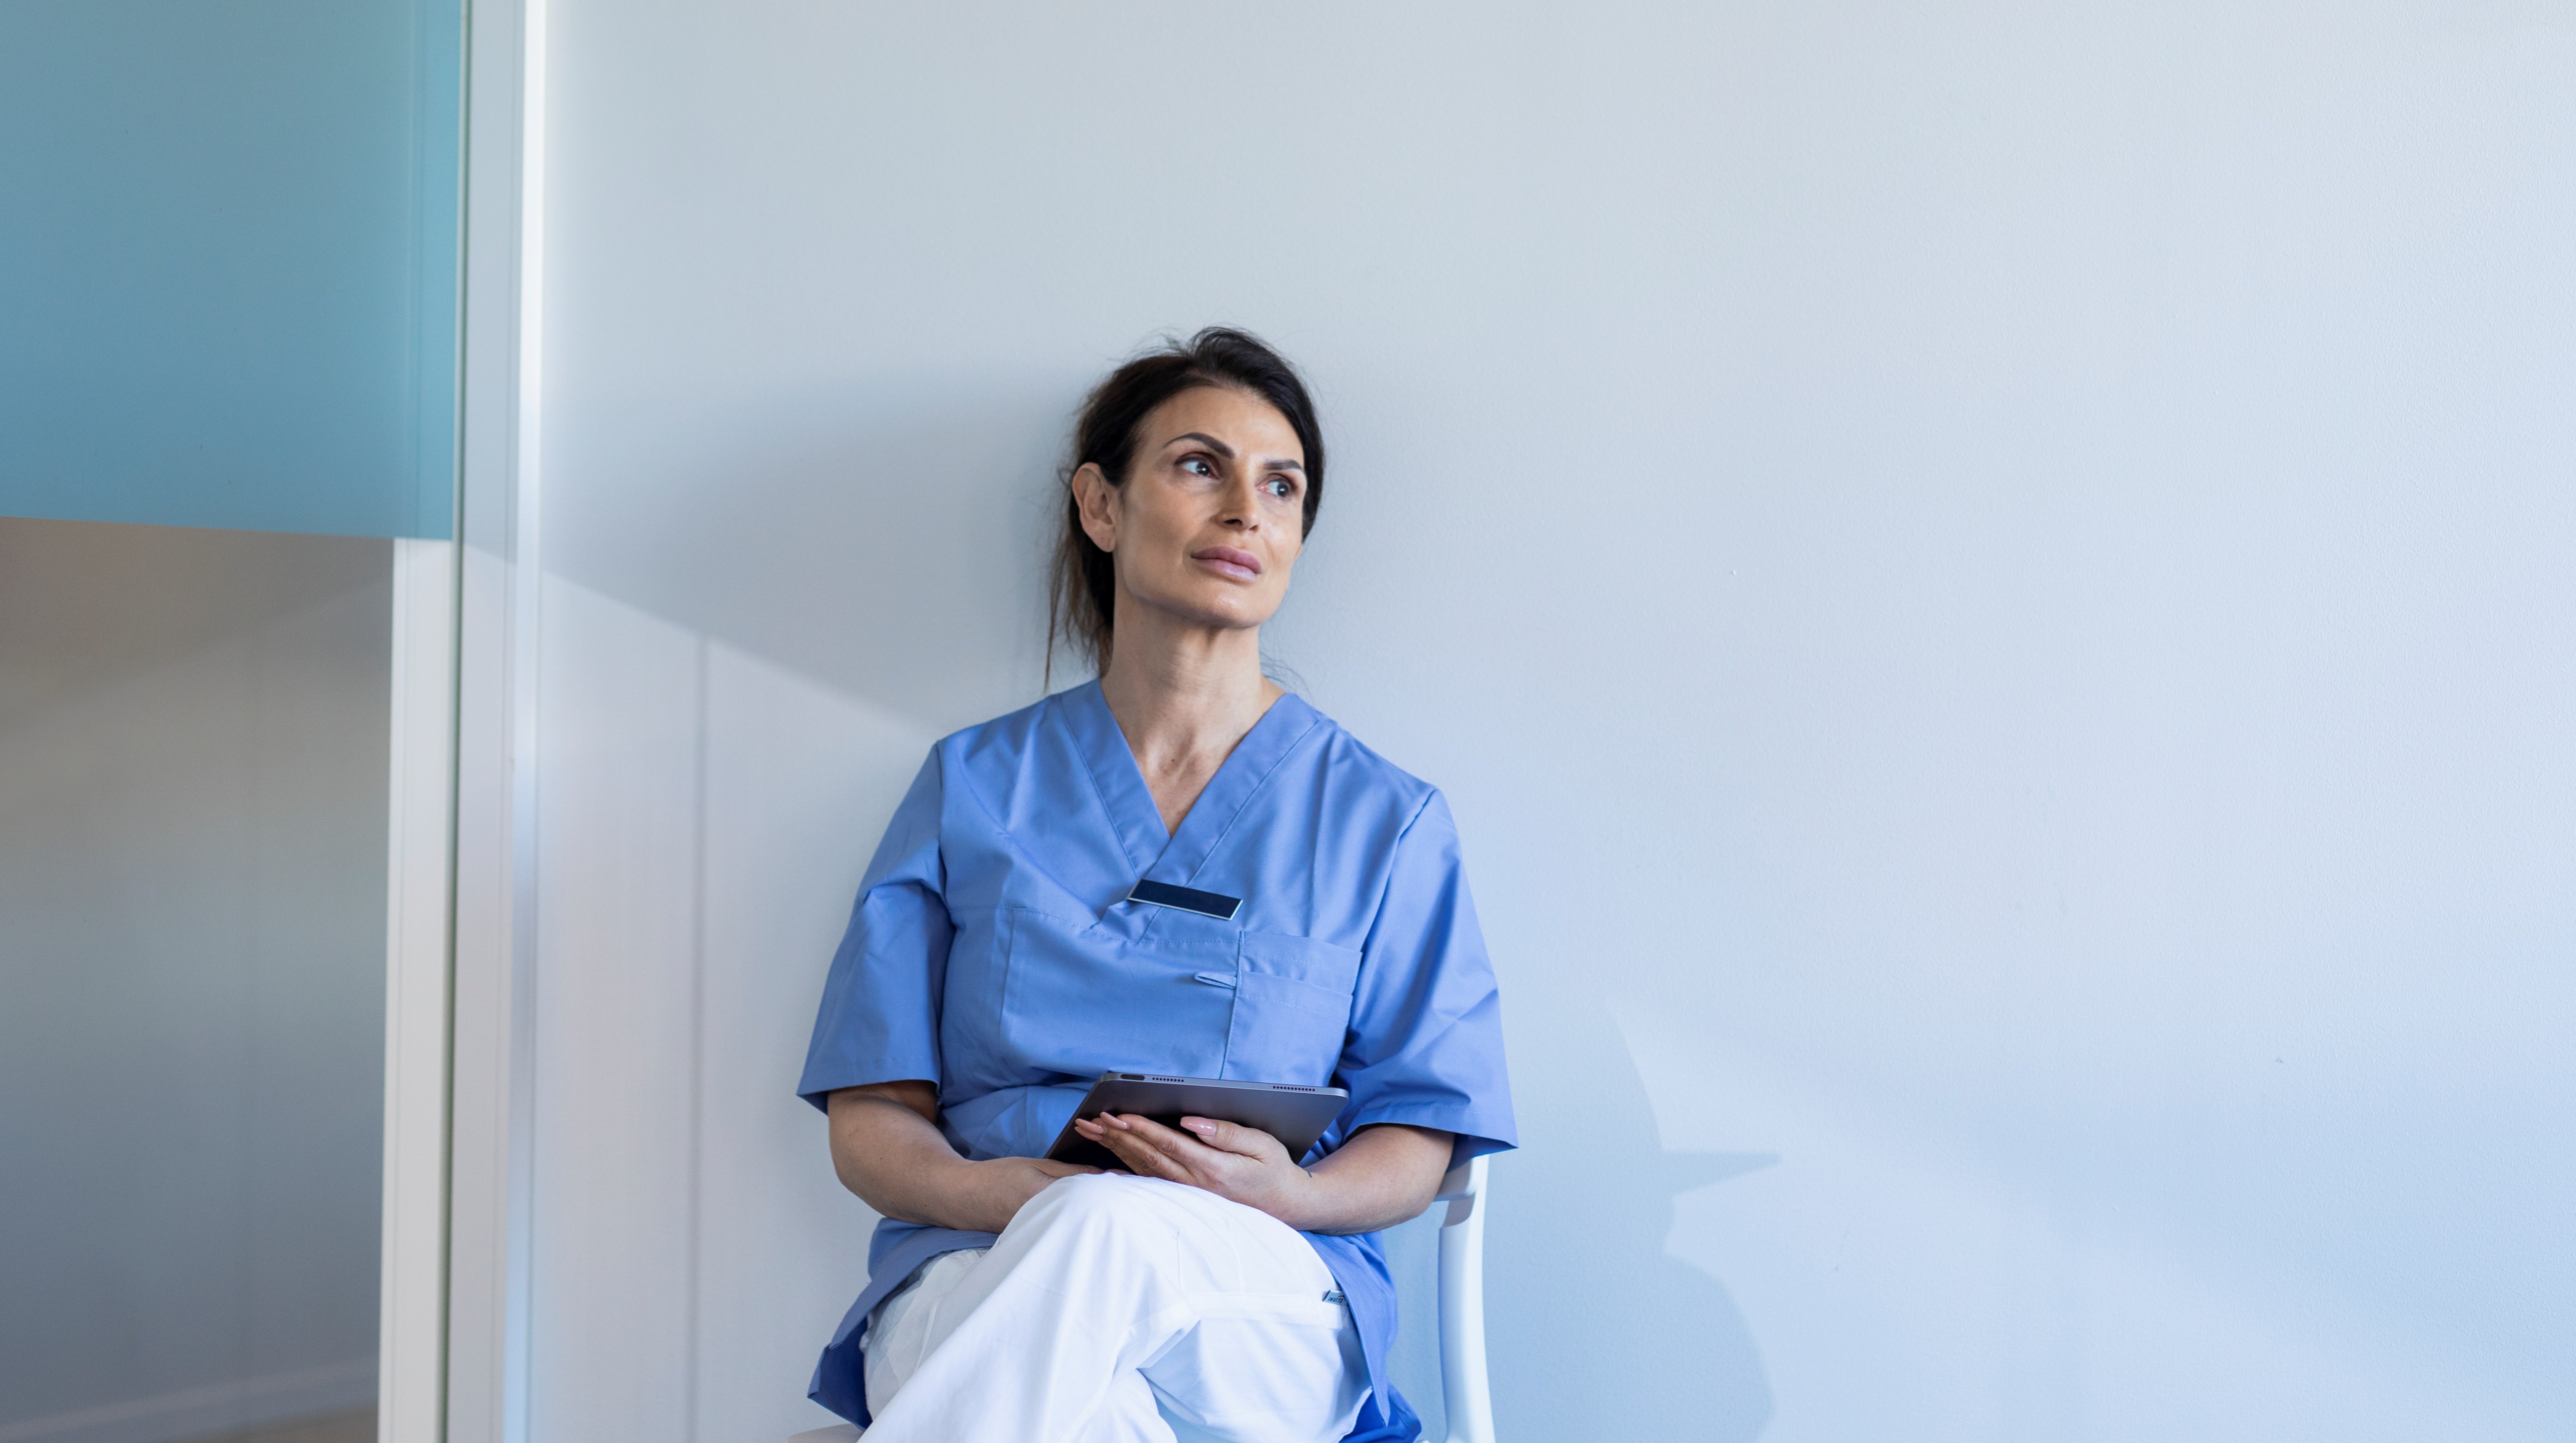 En kvinna i sjukvårdskläder tar en paus